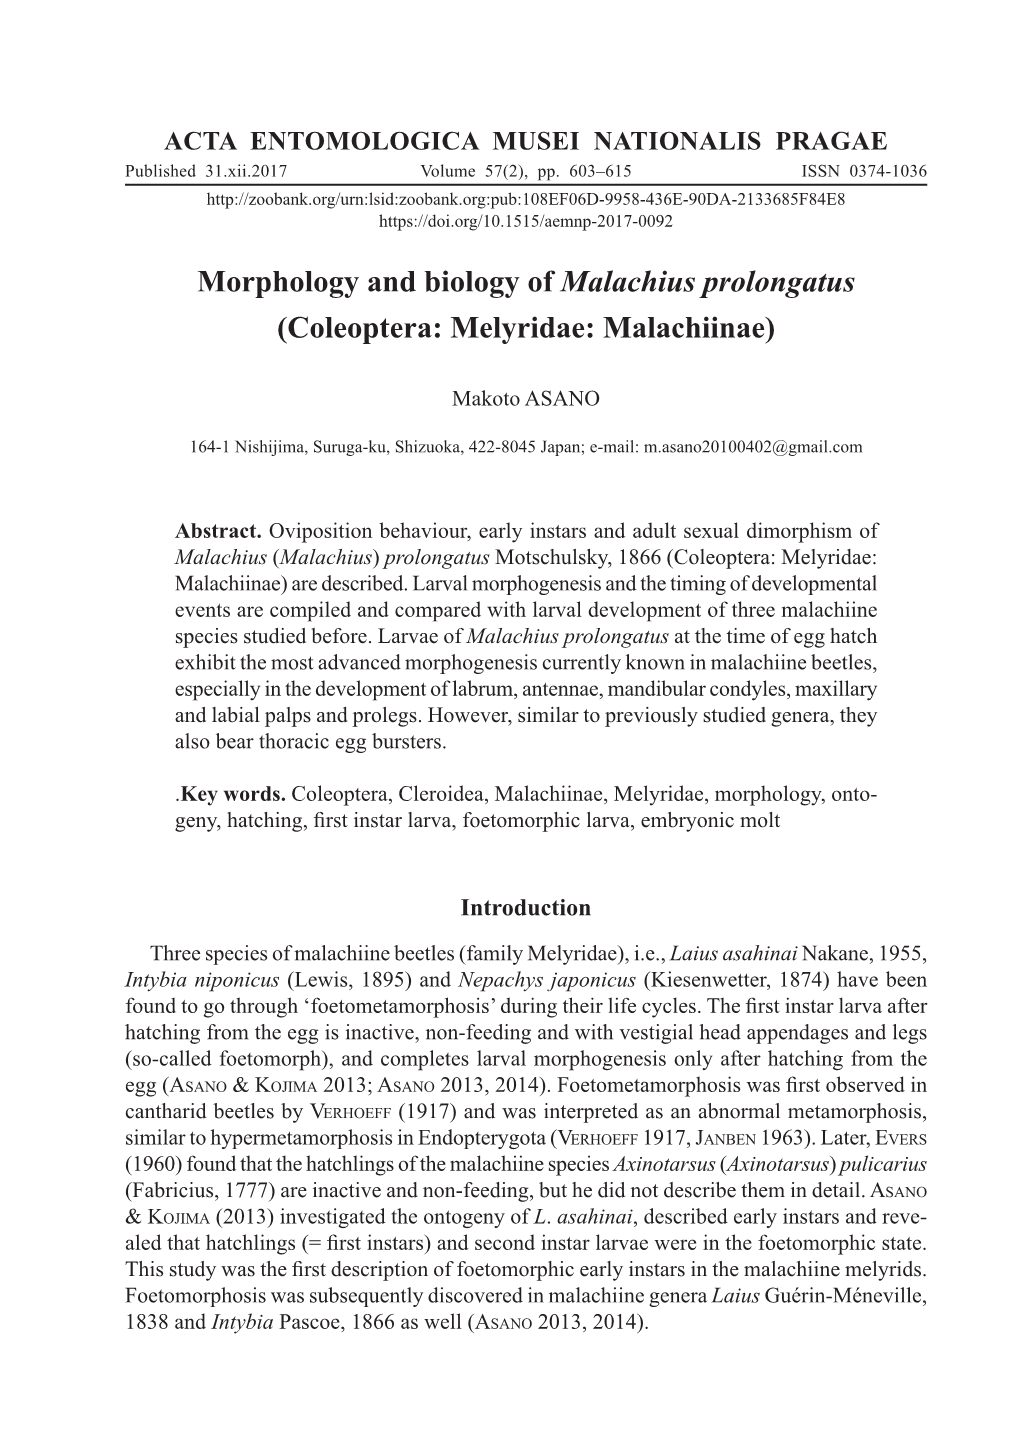 Morphology and Biology of Malachius Prolongatus (Coleoptera: Melyridae: Malachiinae)